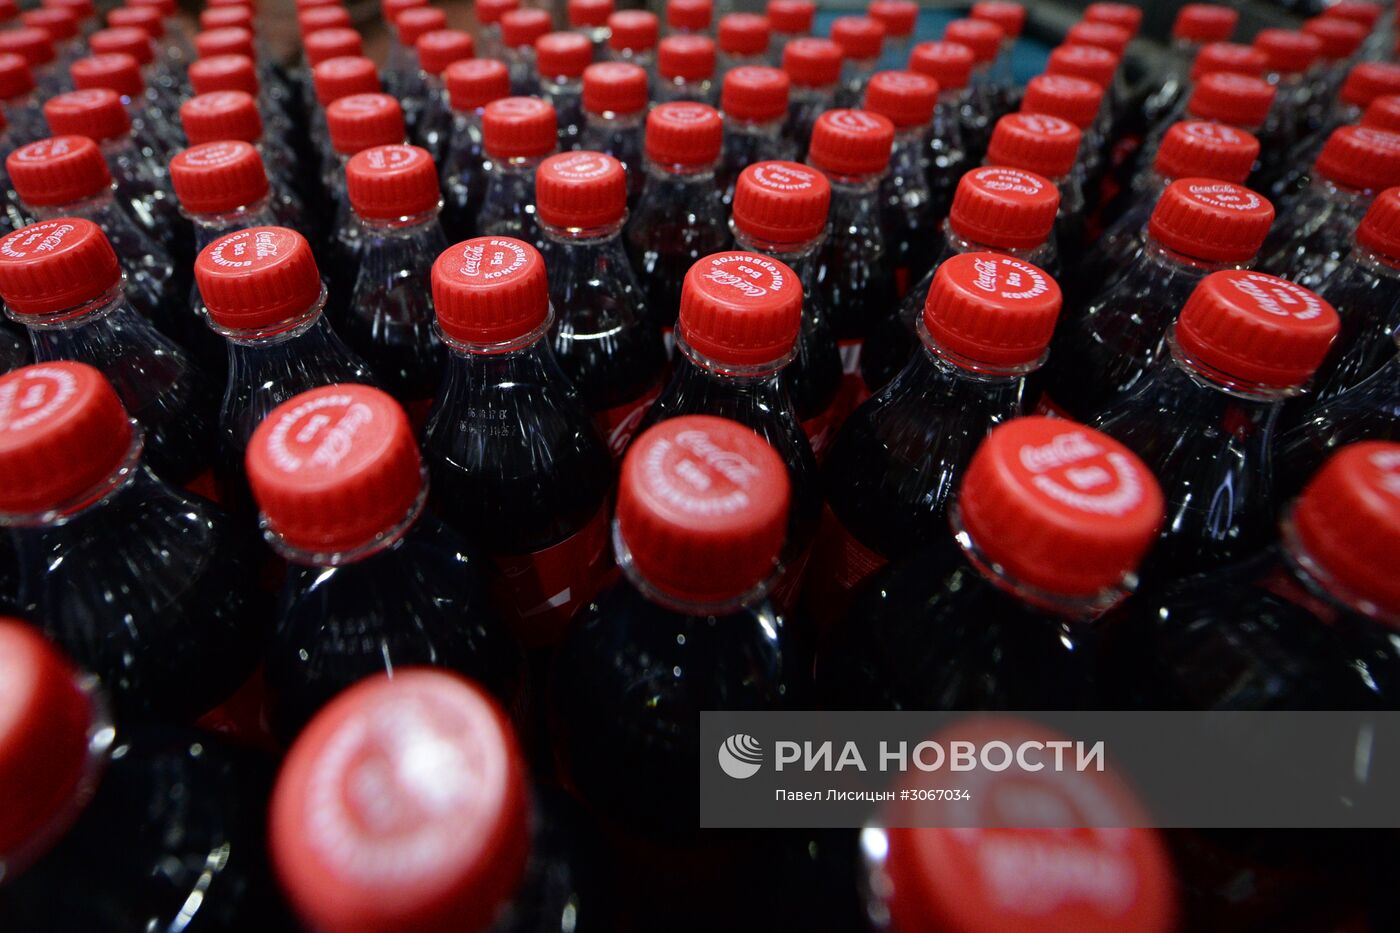 Завод Сoca-Cola HBC Россия